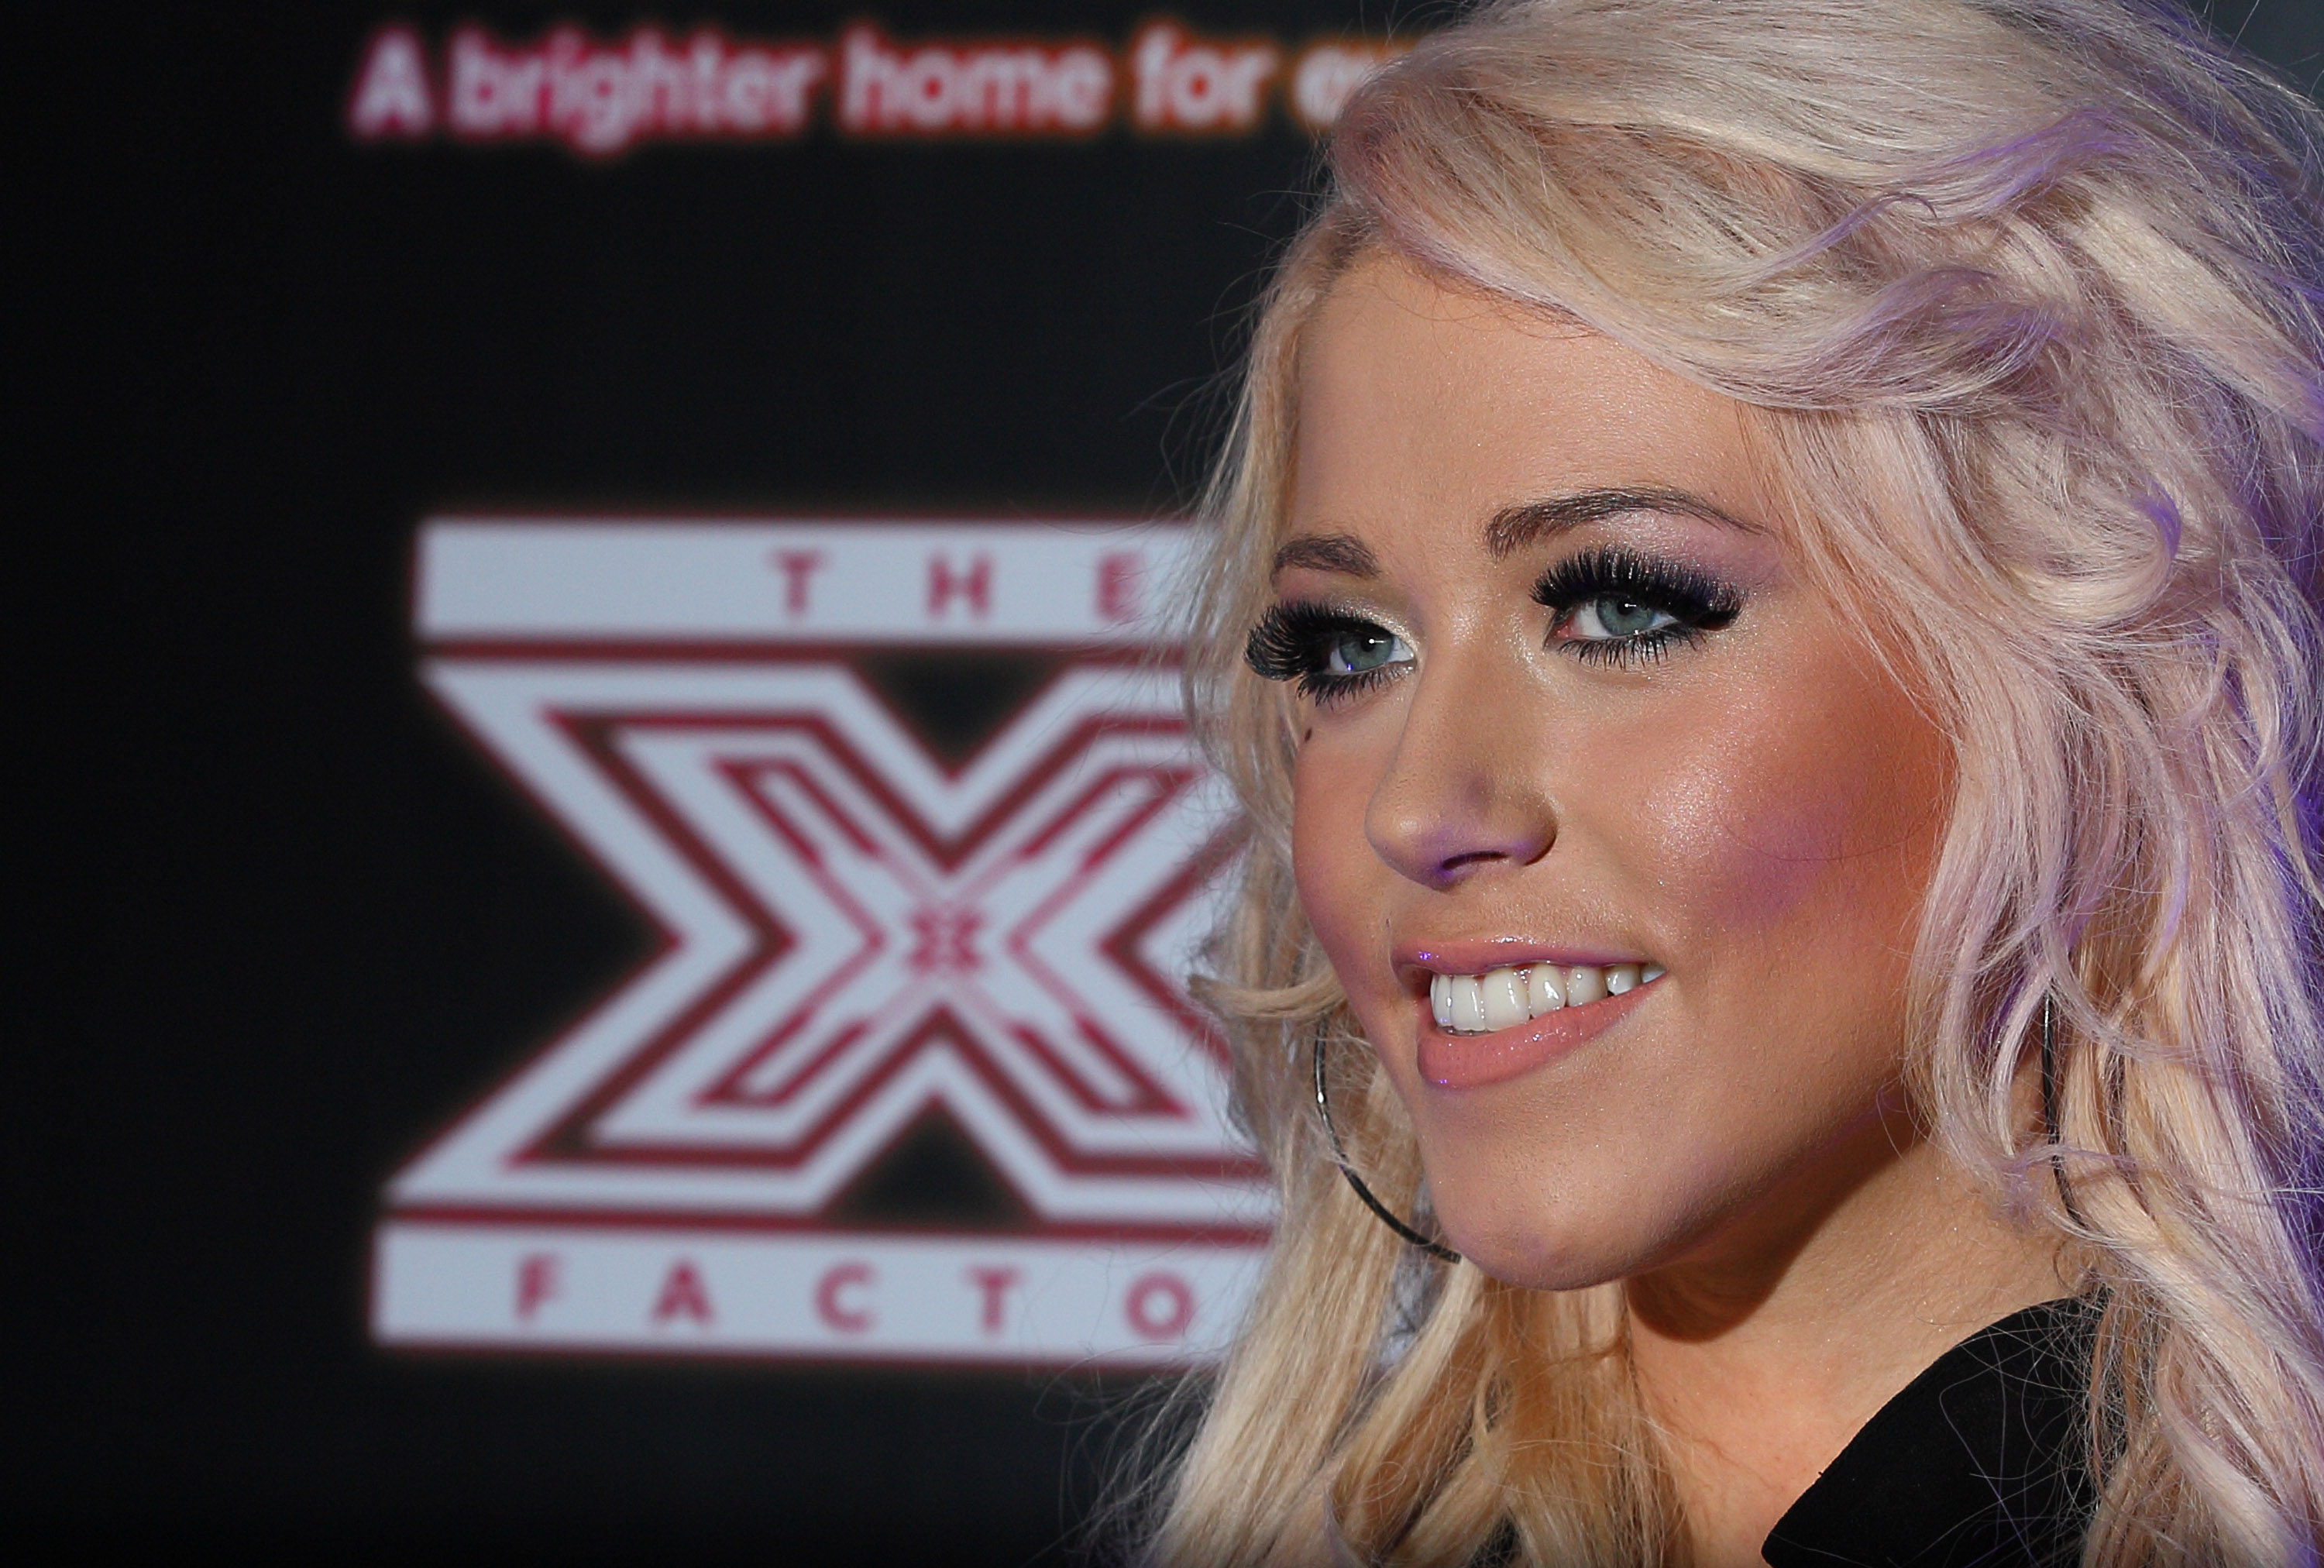 Amelia compitió en la serie de 2011 de The X Factor, terminando en tercer lugar.